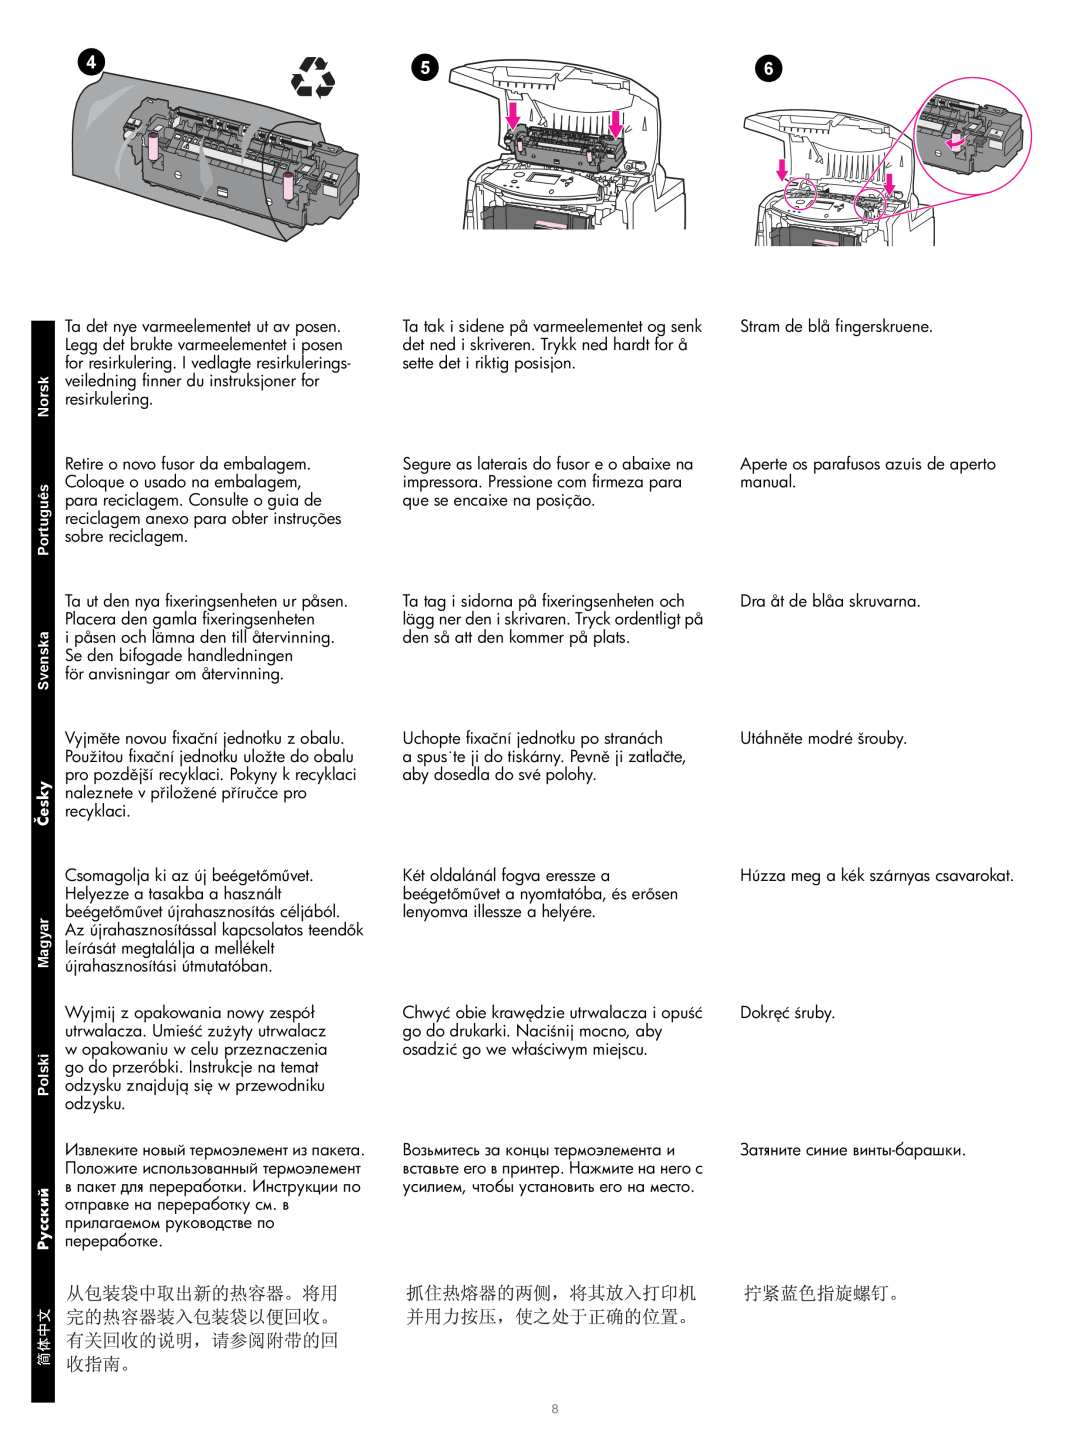 HP Q3677A 220V Image Fuser Kit, Q3676A 110V Image Fuser Kit, Q3675A Image Transfer Kit manual för anvisningar om återvinning 